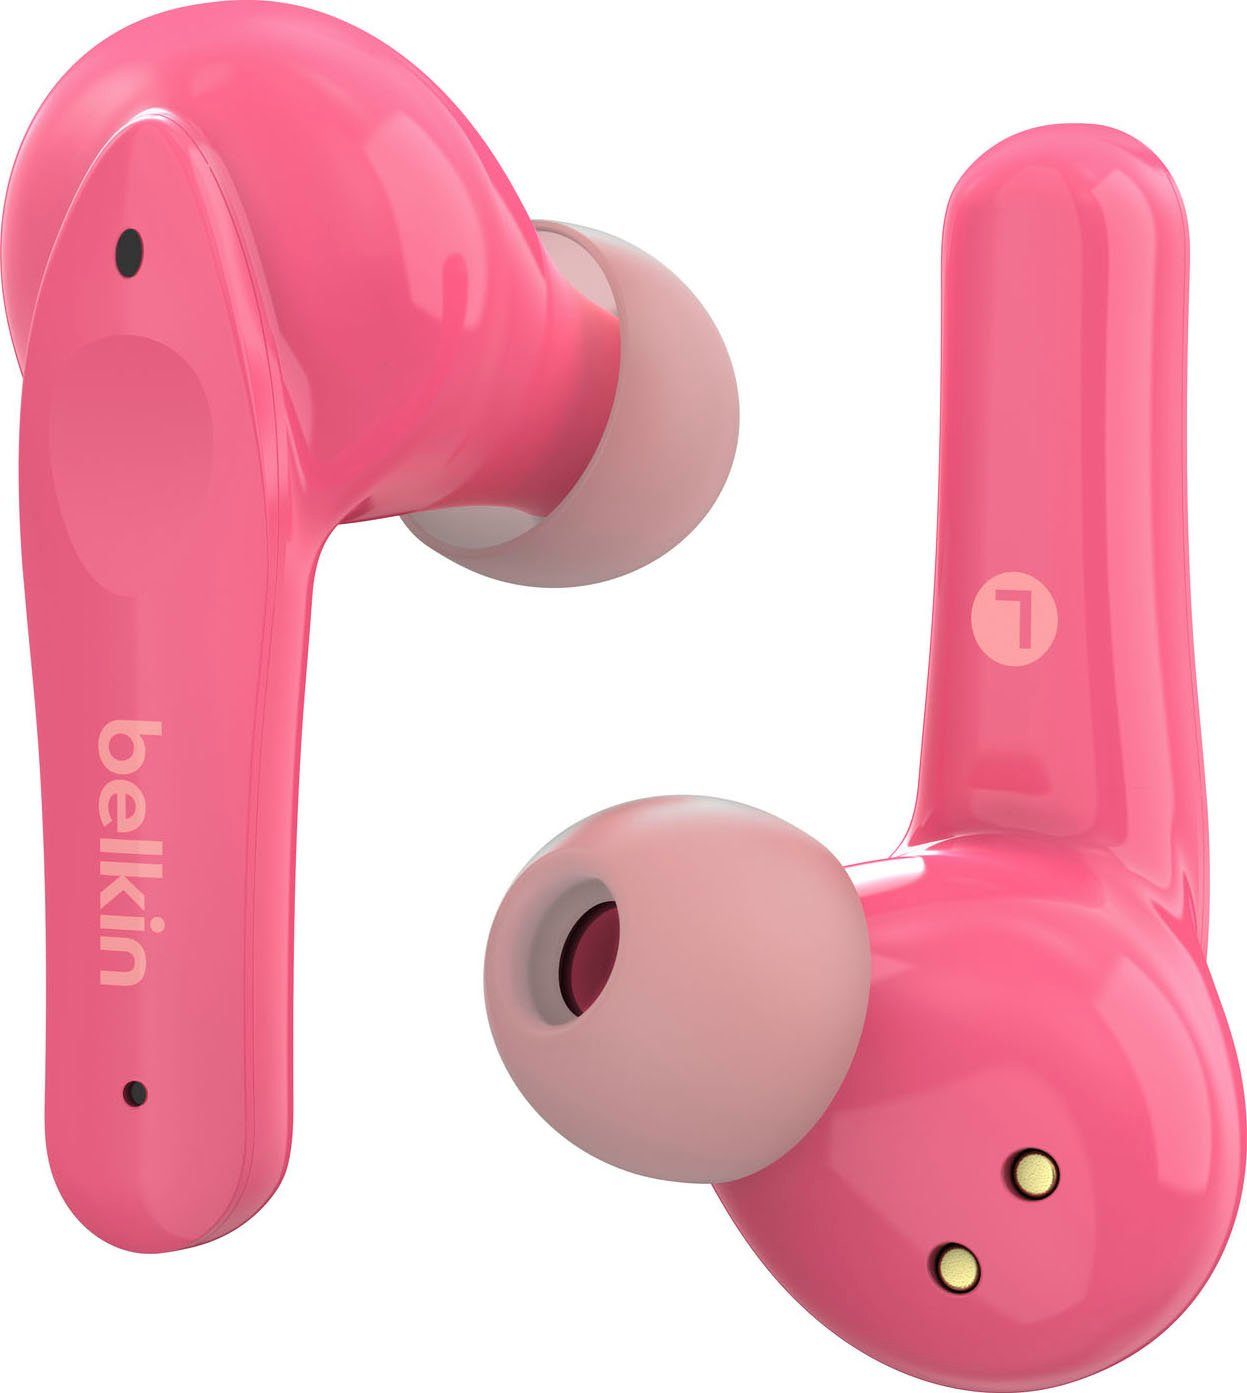 Kopfhörer NANO (auf - wireless 85 dB Kinder am SOUNDFORM In-Ear-Kopfhörer pink Belkin Kopfhörer) begrenzt;